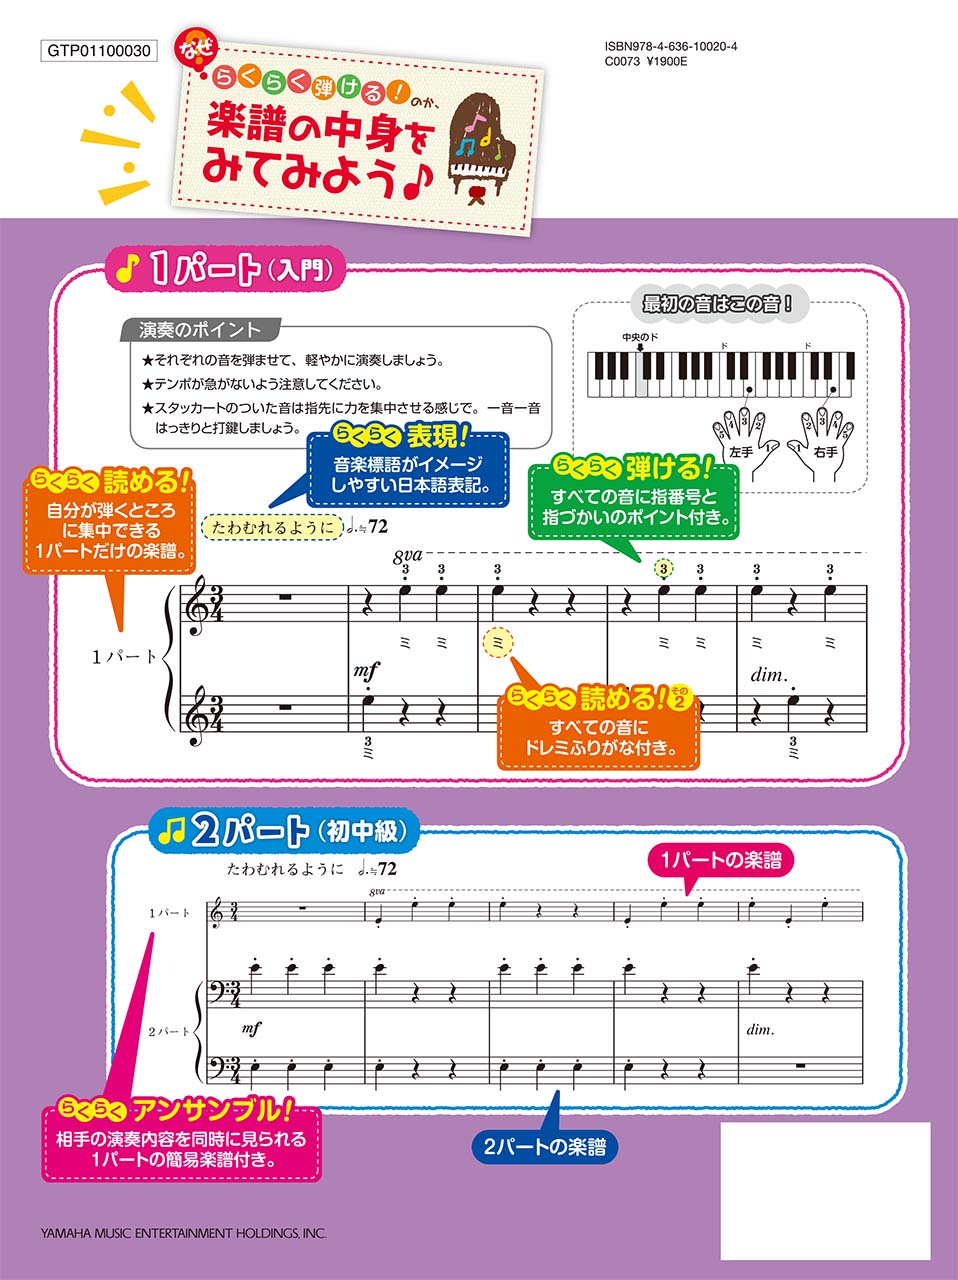 ヤマハ 入門 初中級 らくらく弾ける ピアノ連弾 ディズニー 1パートはドレミふりがな付き 楽譜 ピアノ ヤマハの楽譜出版